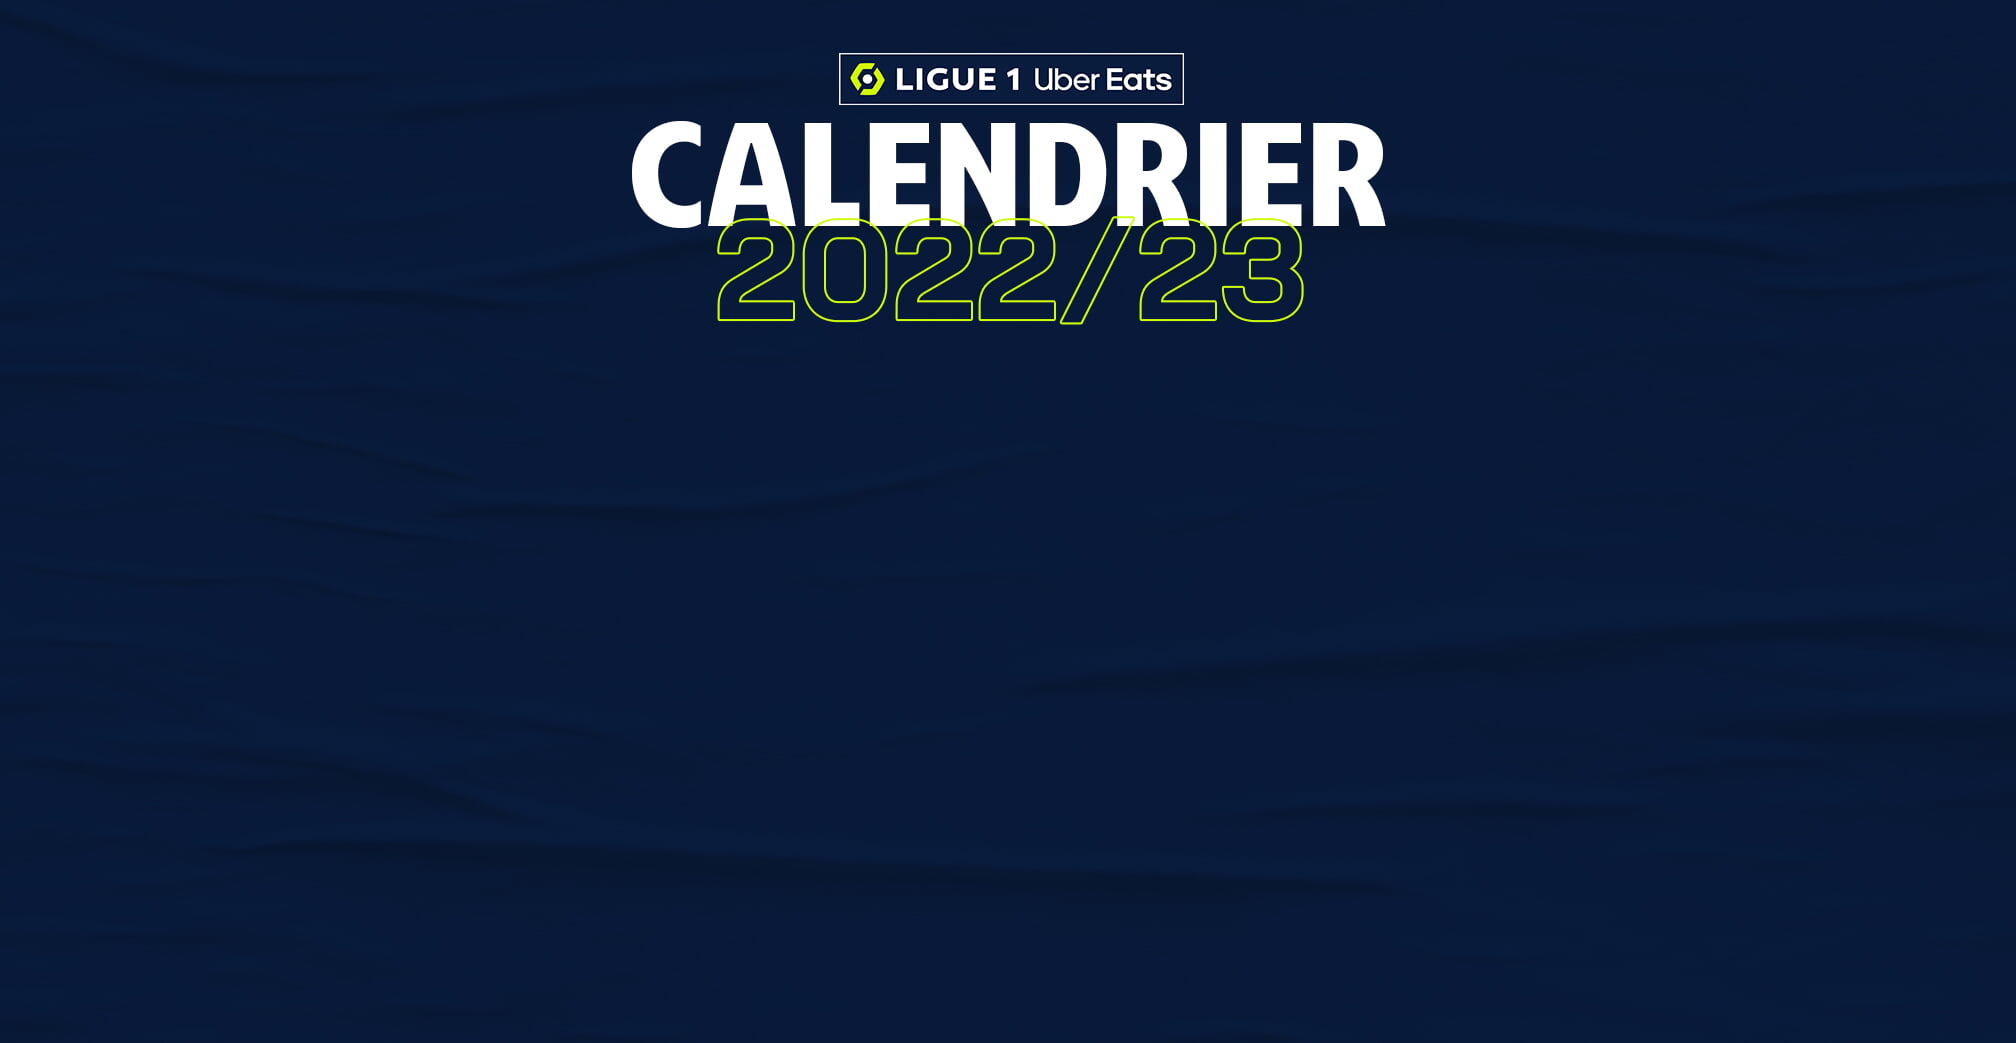 Calendrier Olympique de Marseille, Match OM 2023/2024